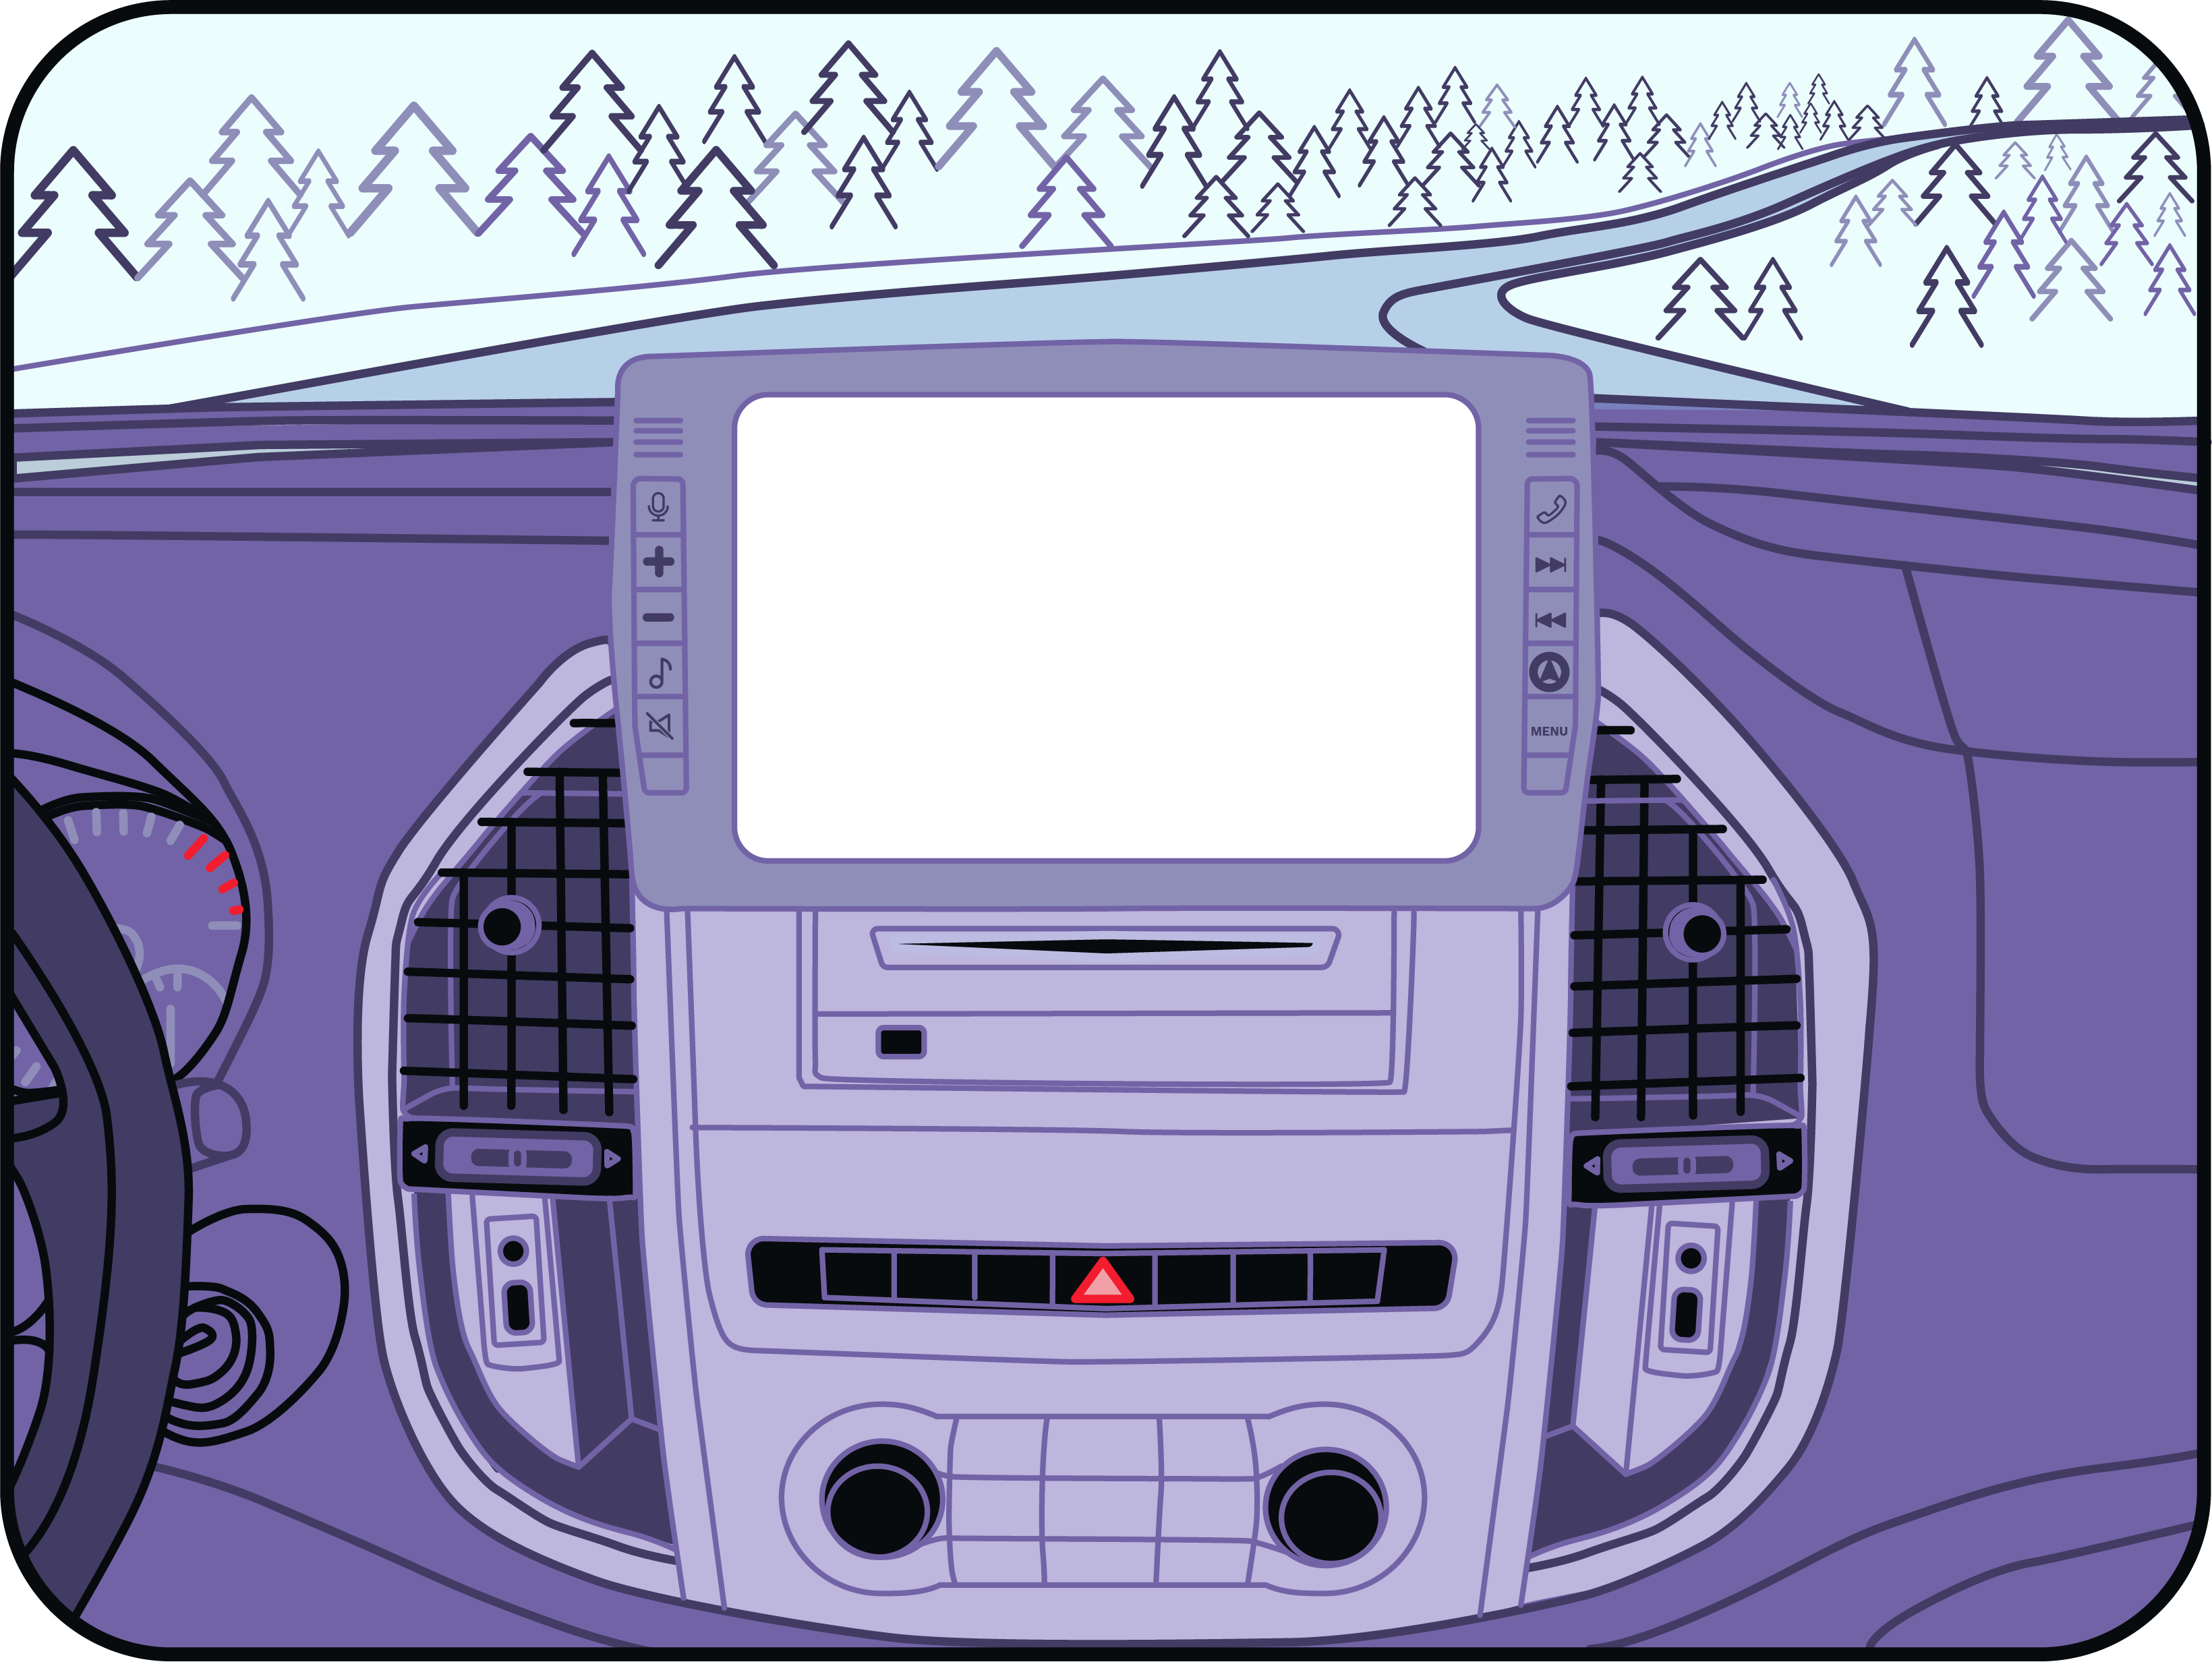 Interieur de voiture avec informations de resultat du calcul sur le gps intégré.